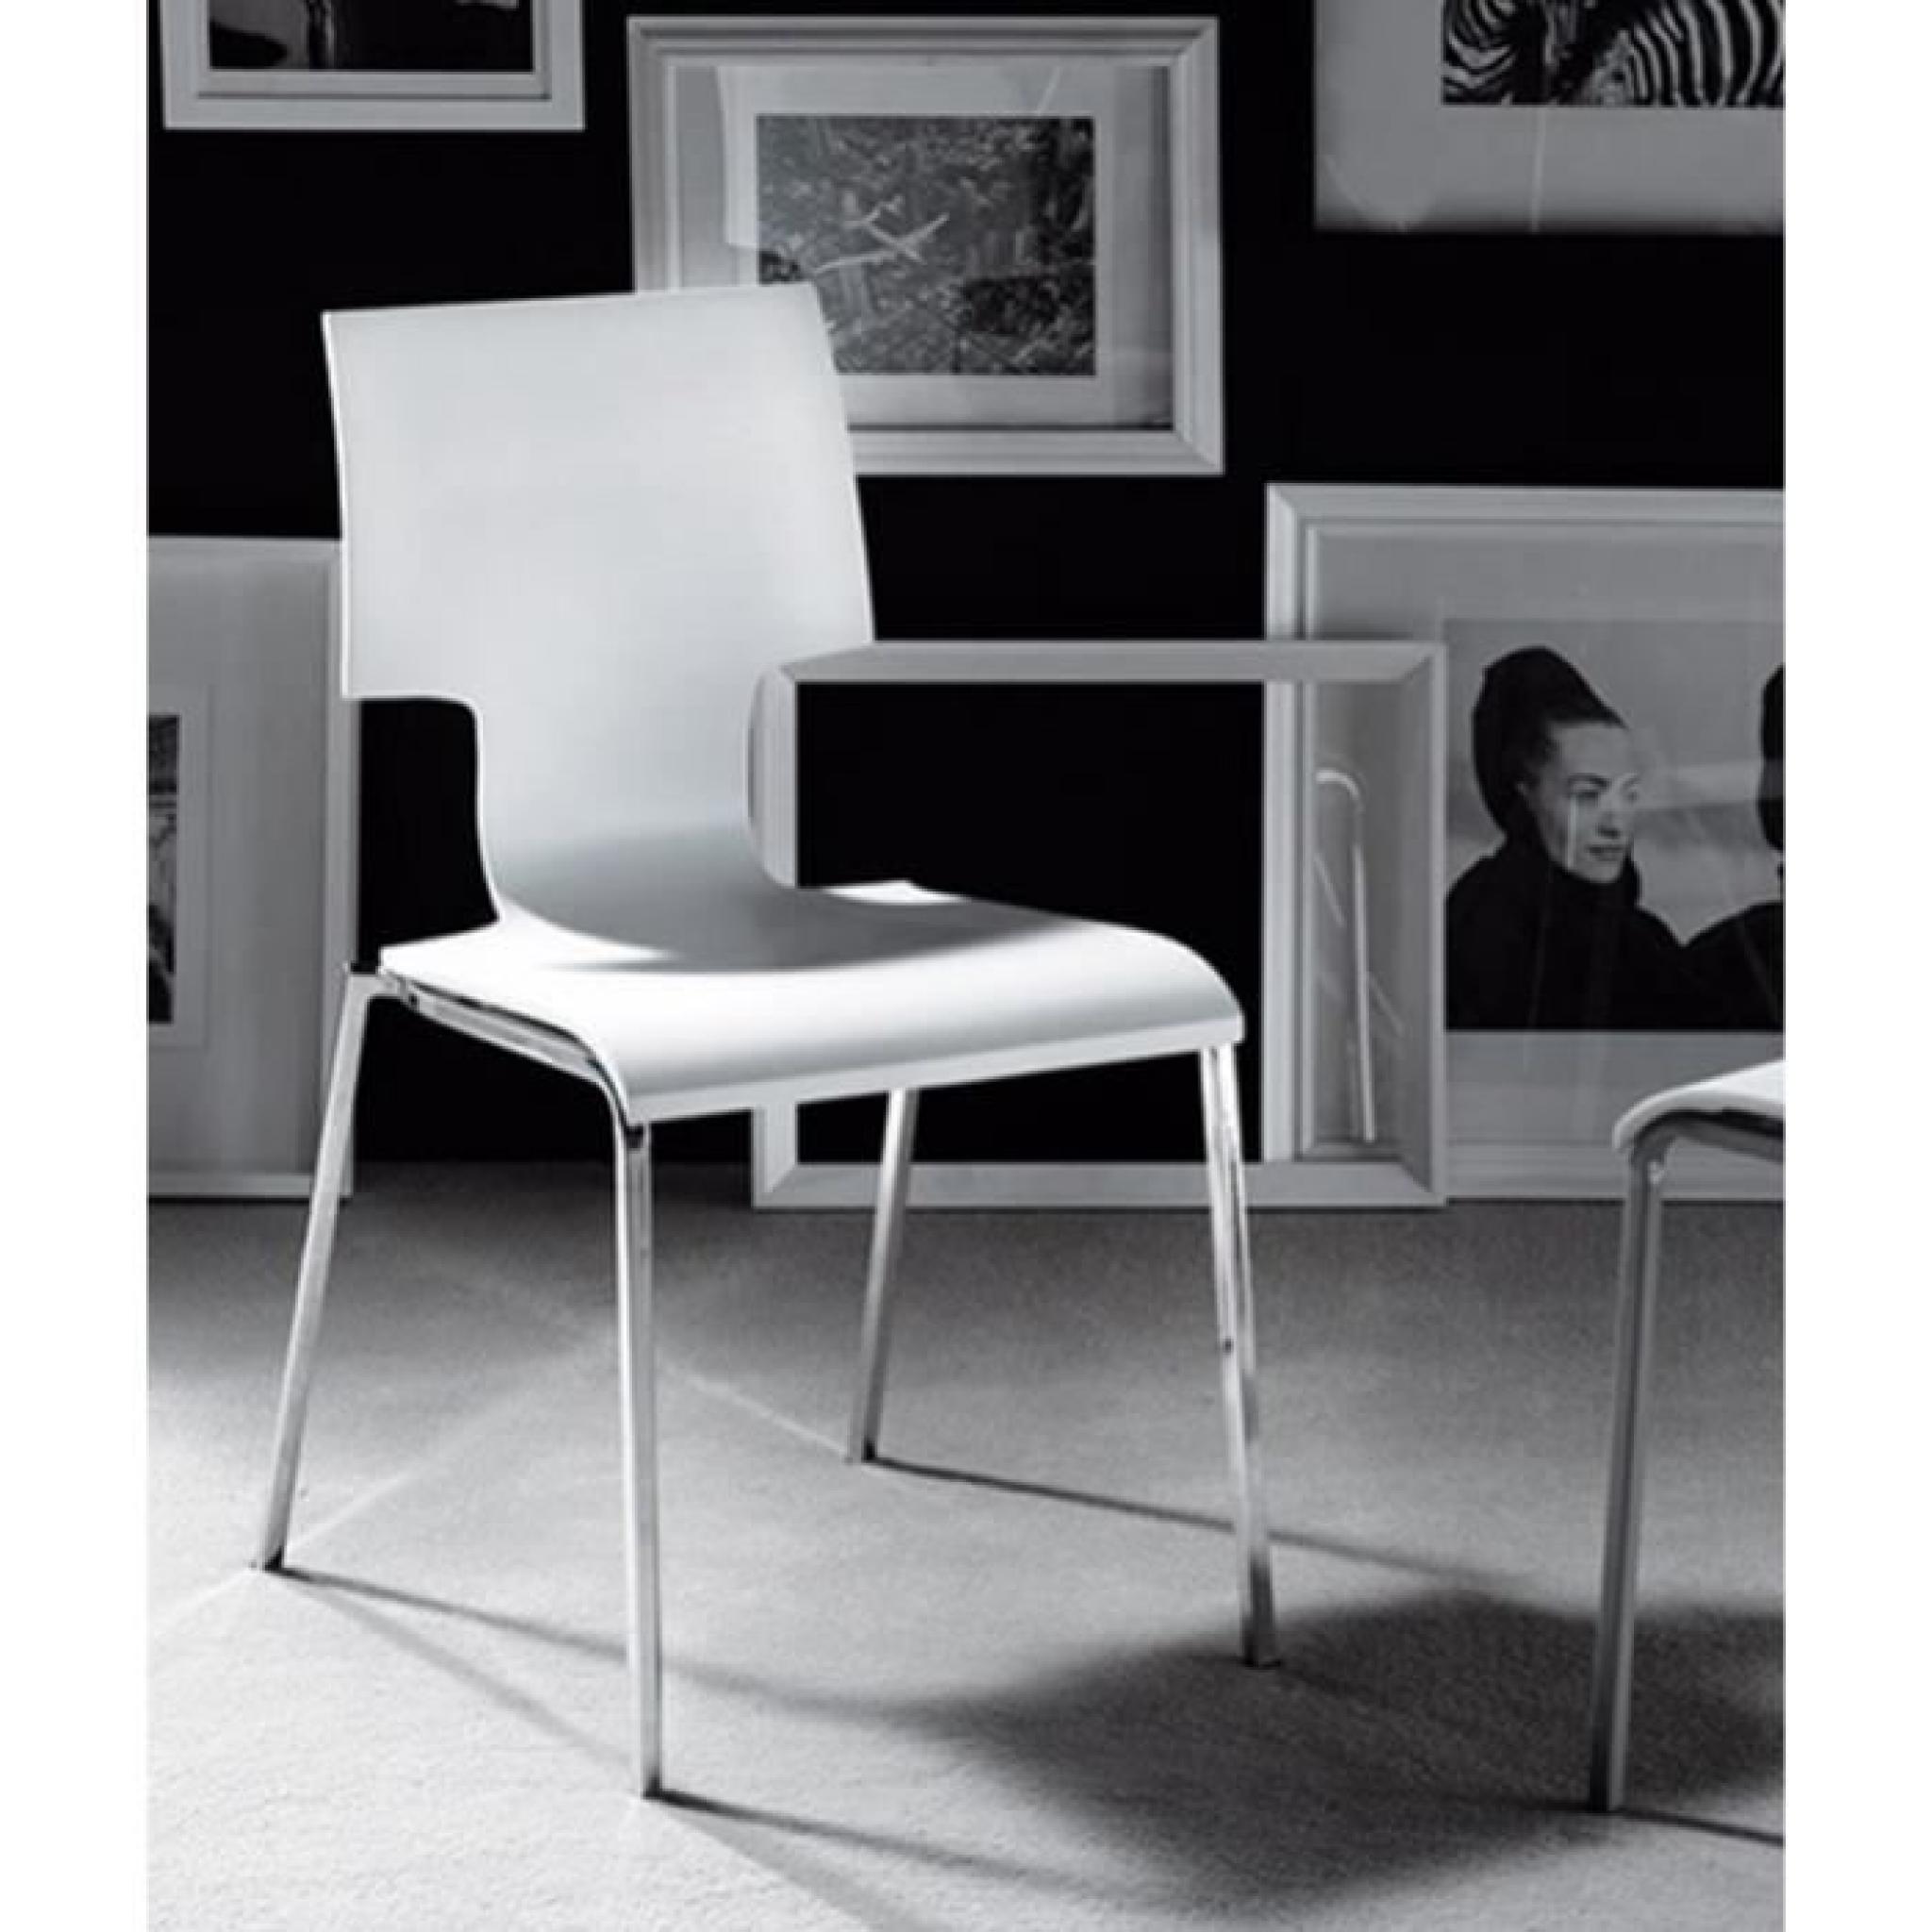 La chaise  ELEKTRA saura ajouter une touche de modernité et design à votre cuisine, ou bien encore dans votre salle à manger. La ... pas cher